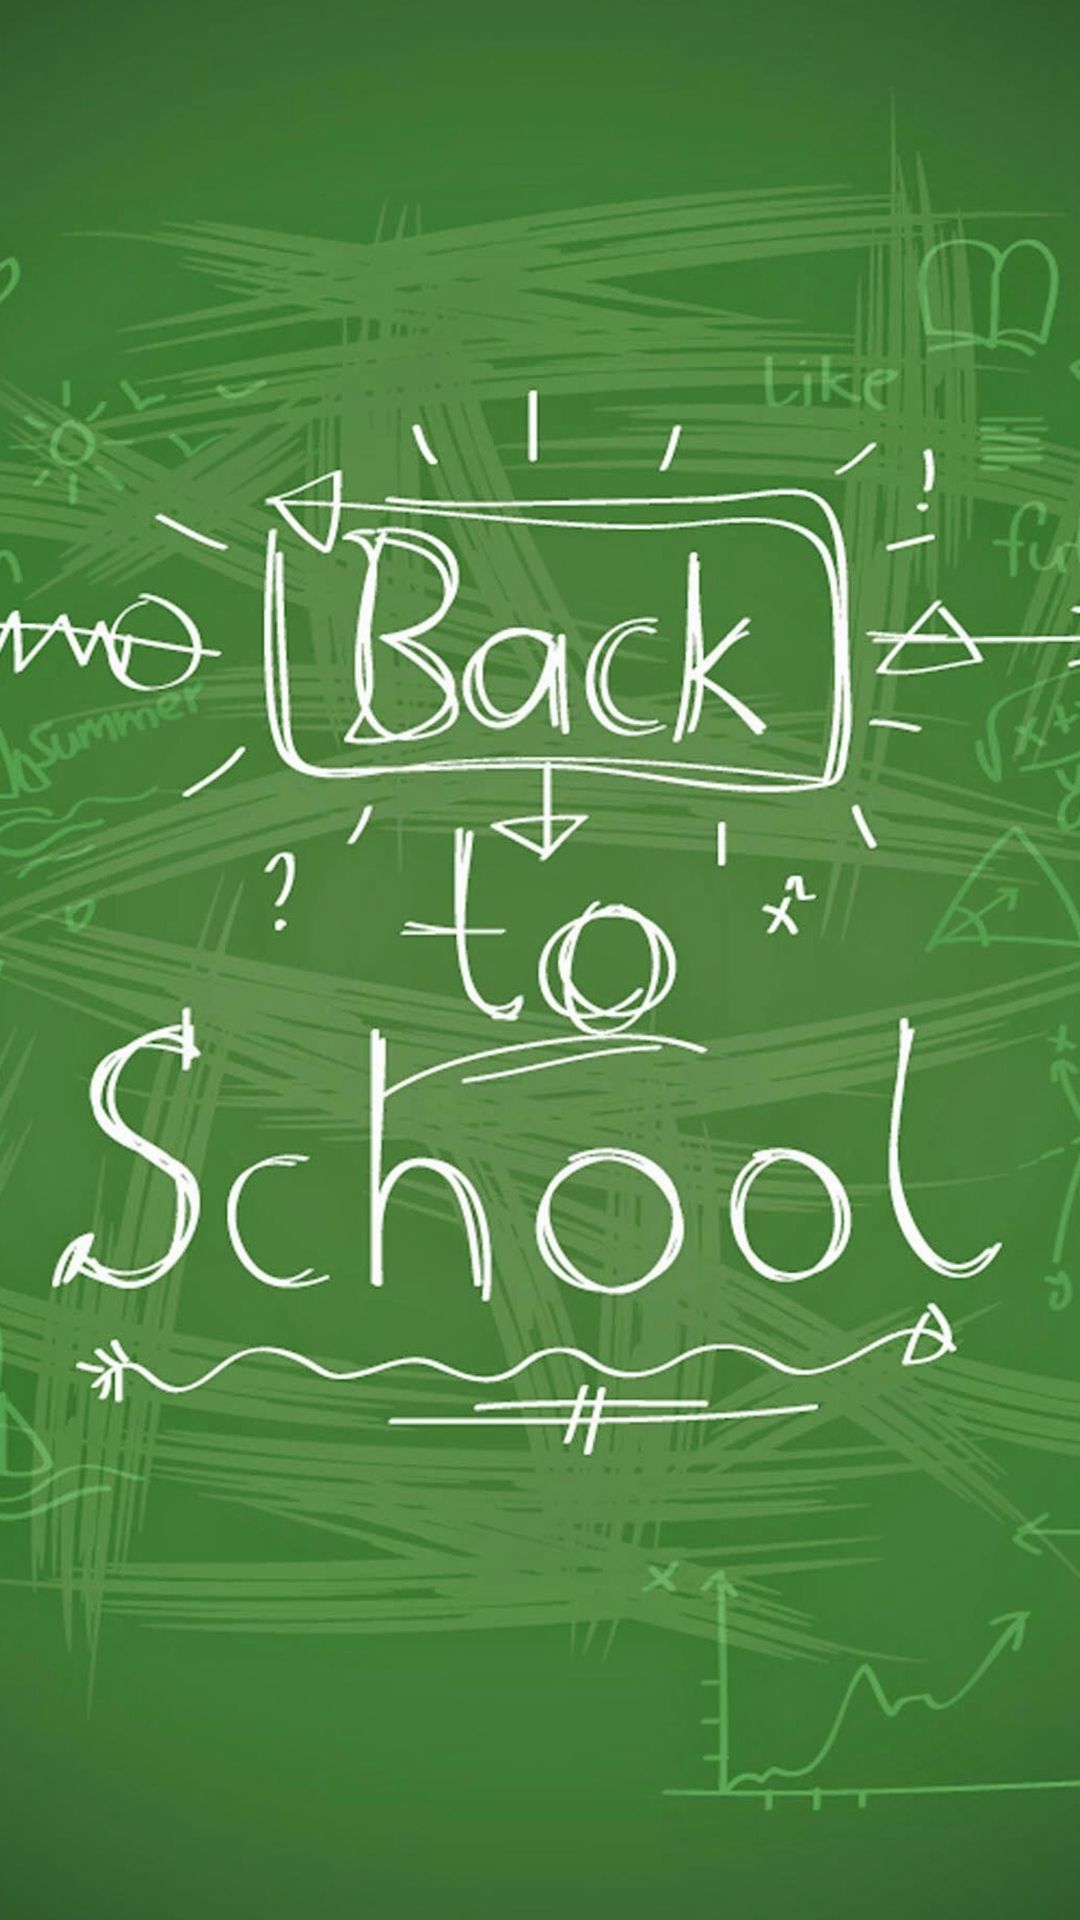 Back to school on a green chalkboard - School